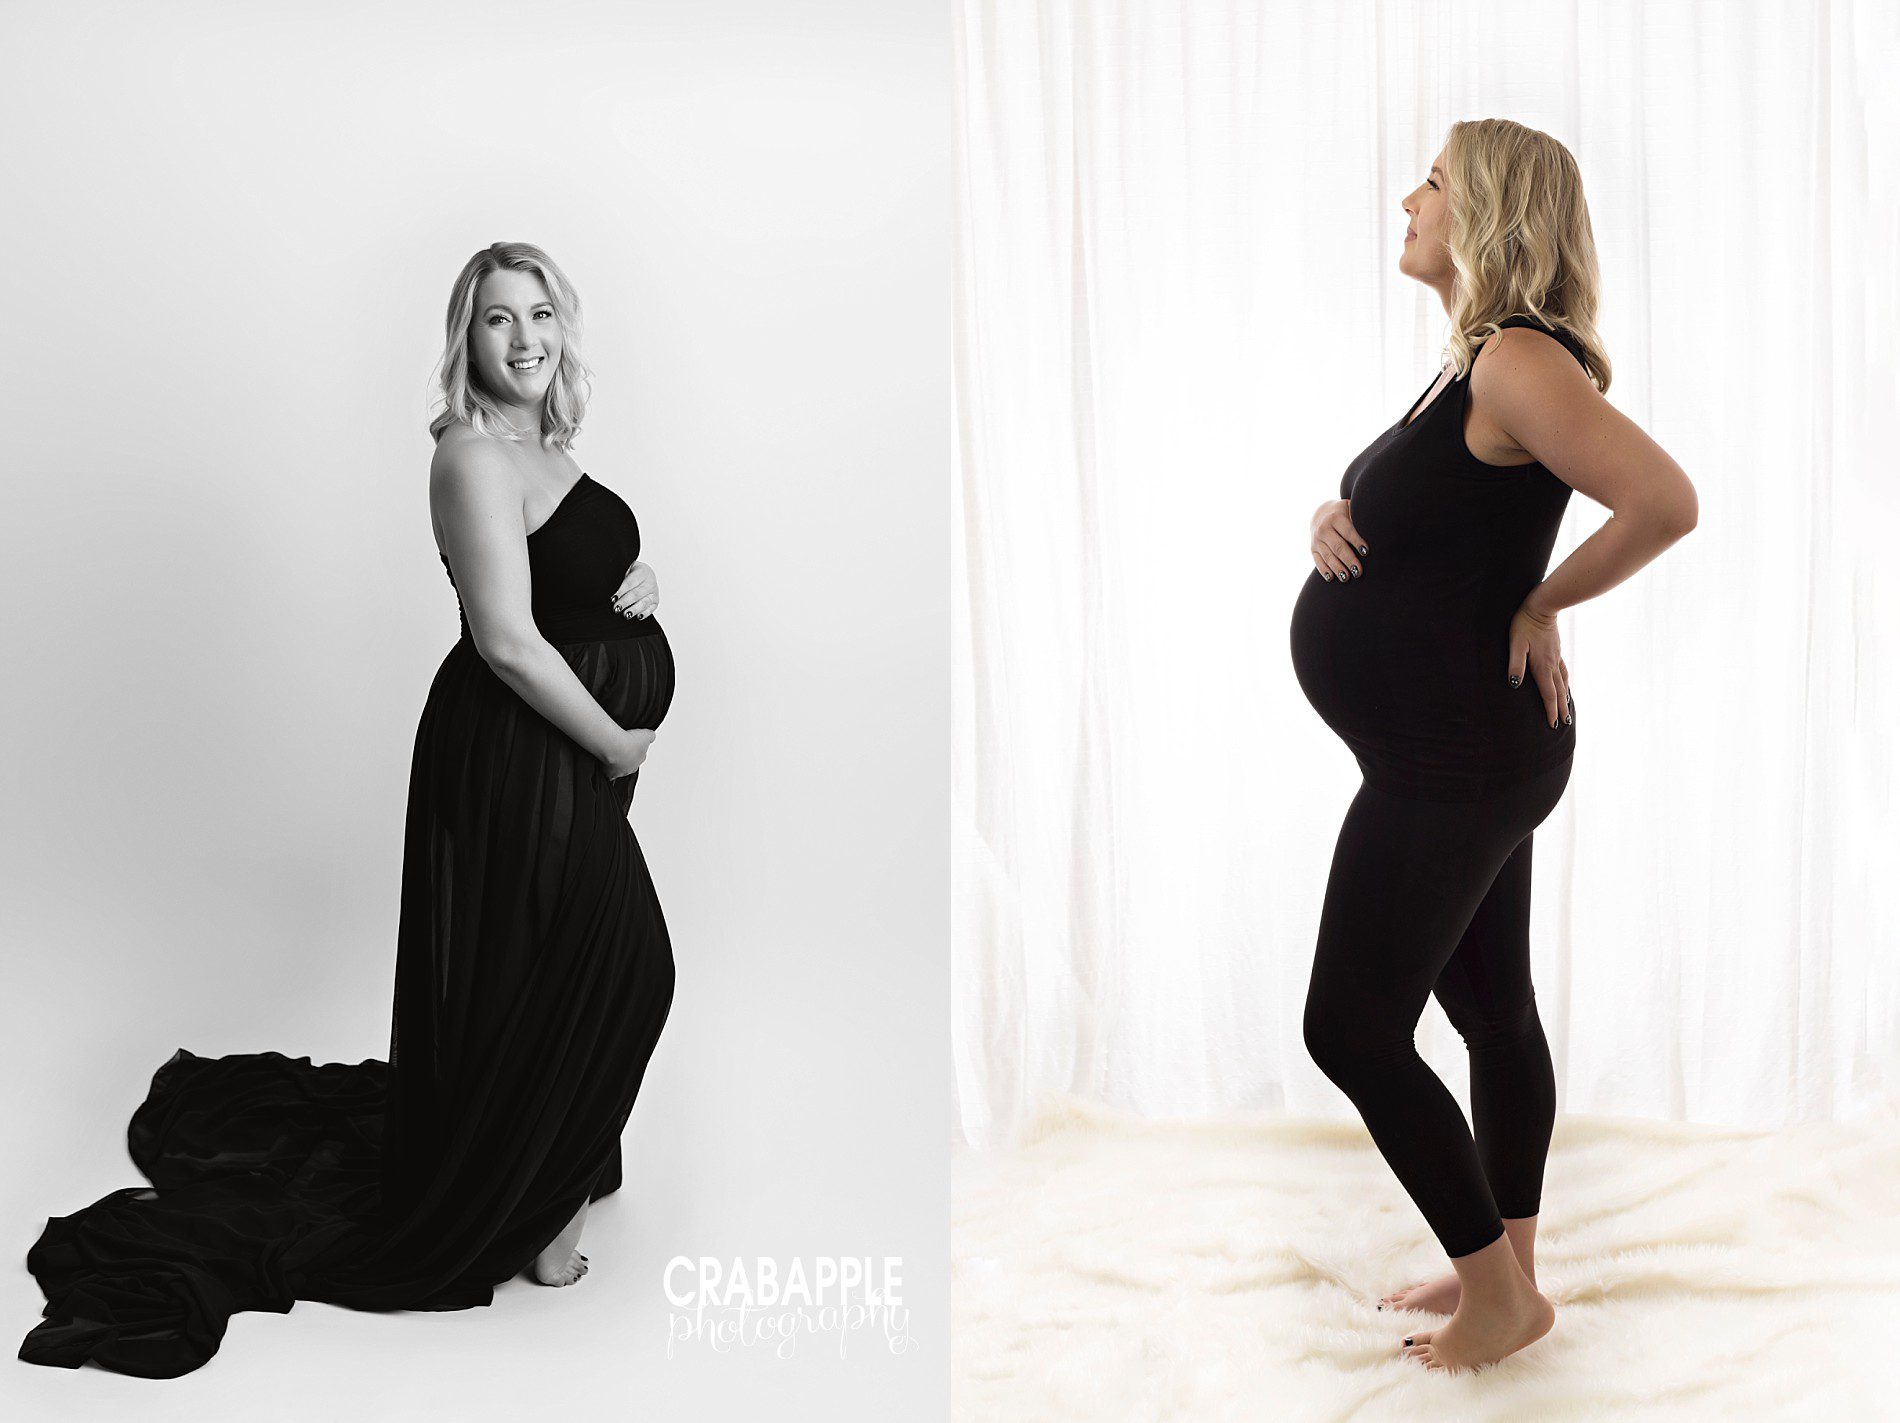 Calvin Klein Maternity Shoot - Lemon8 Search